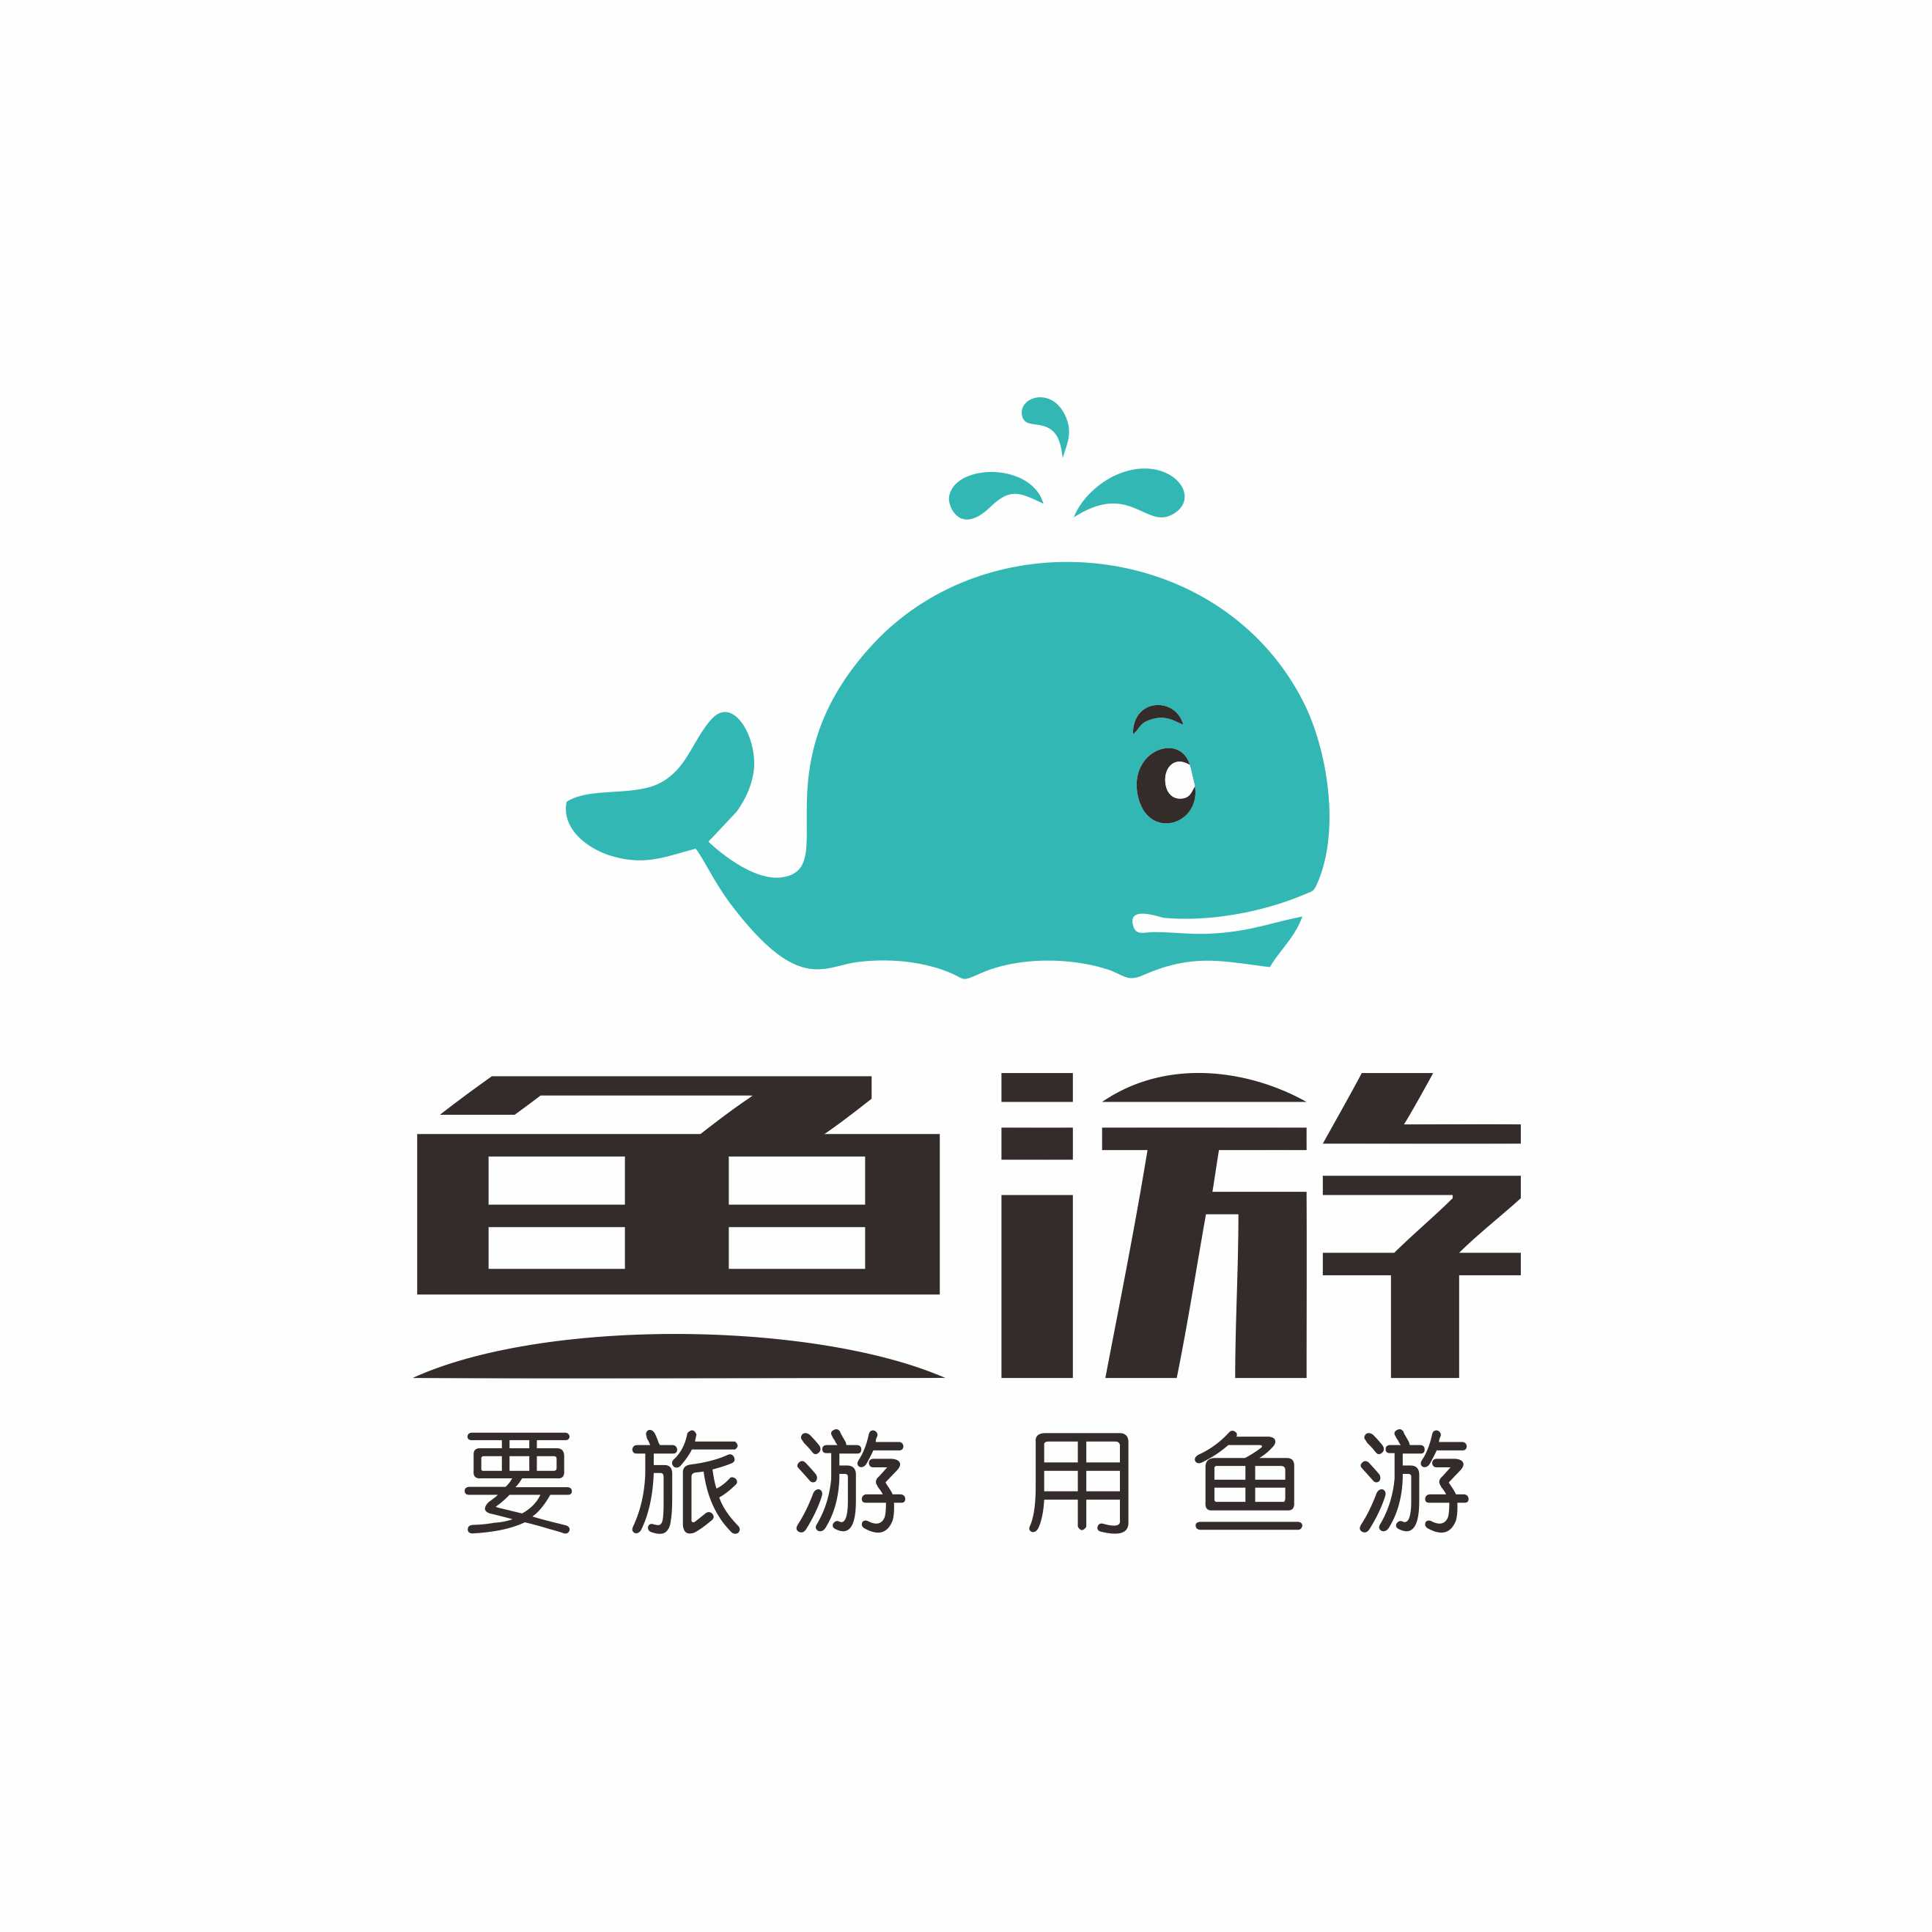 重庆推猫科技有限公司